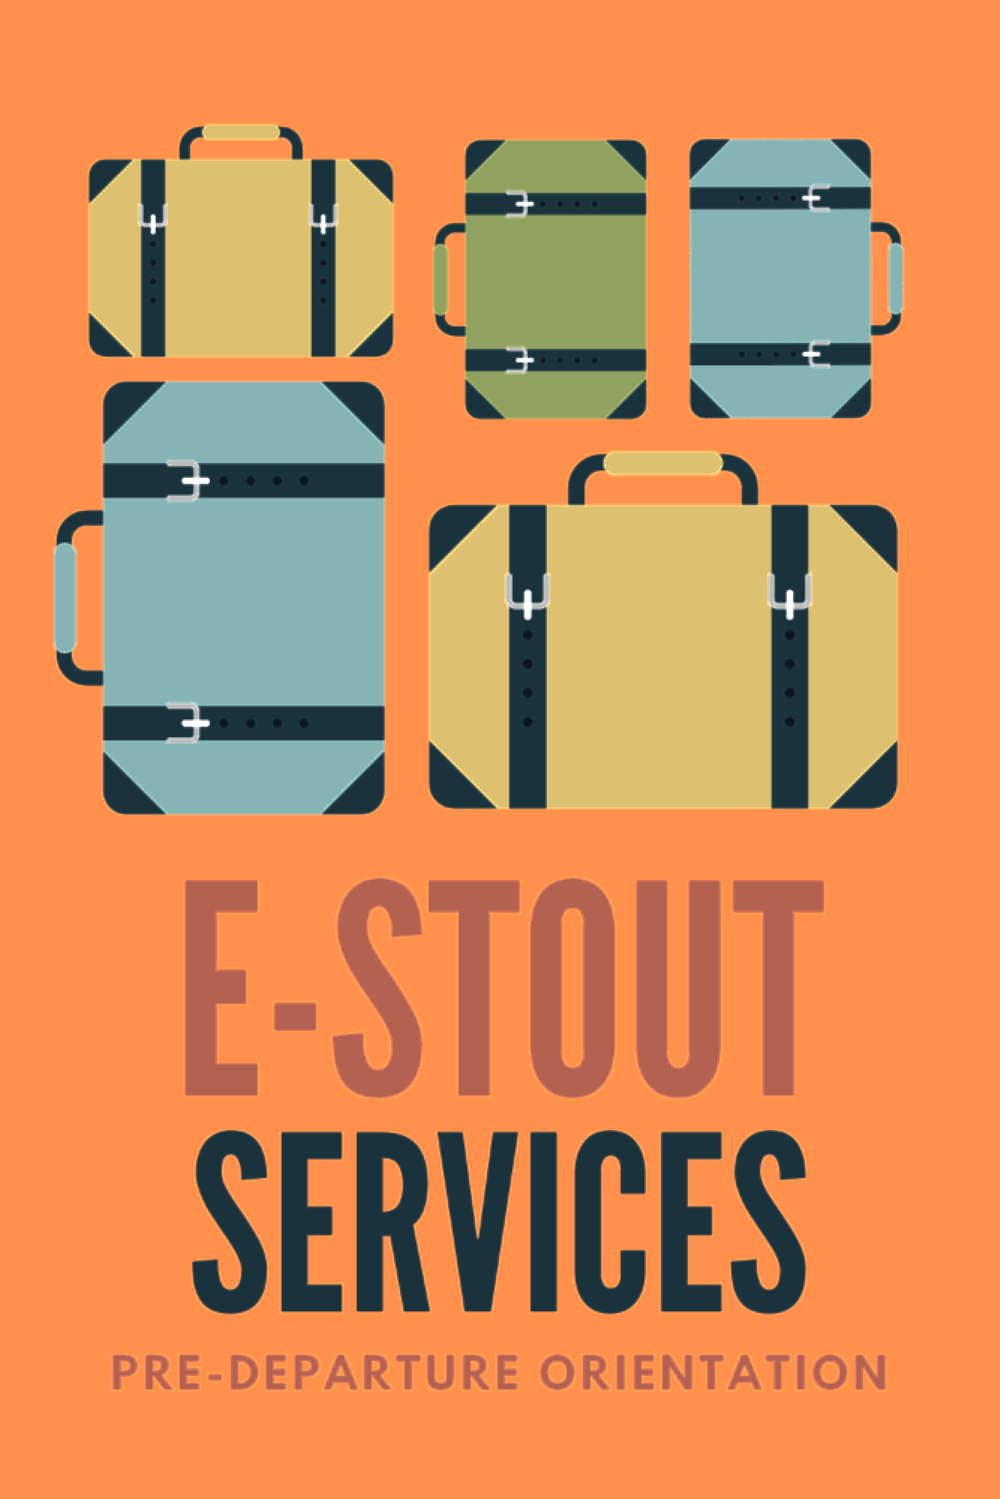 e-Stout Services